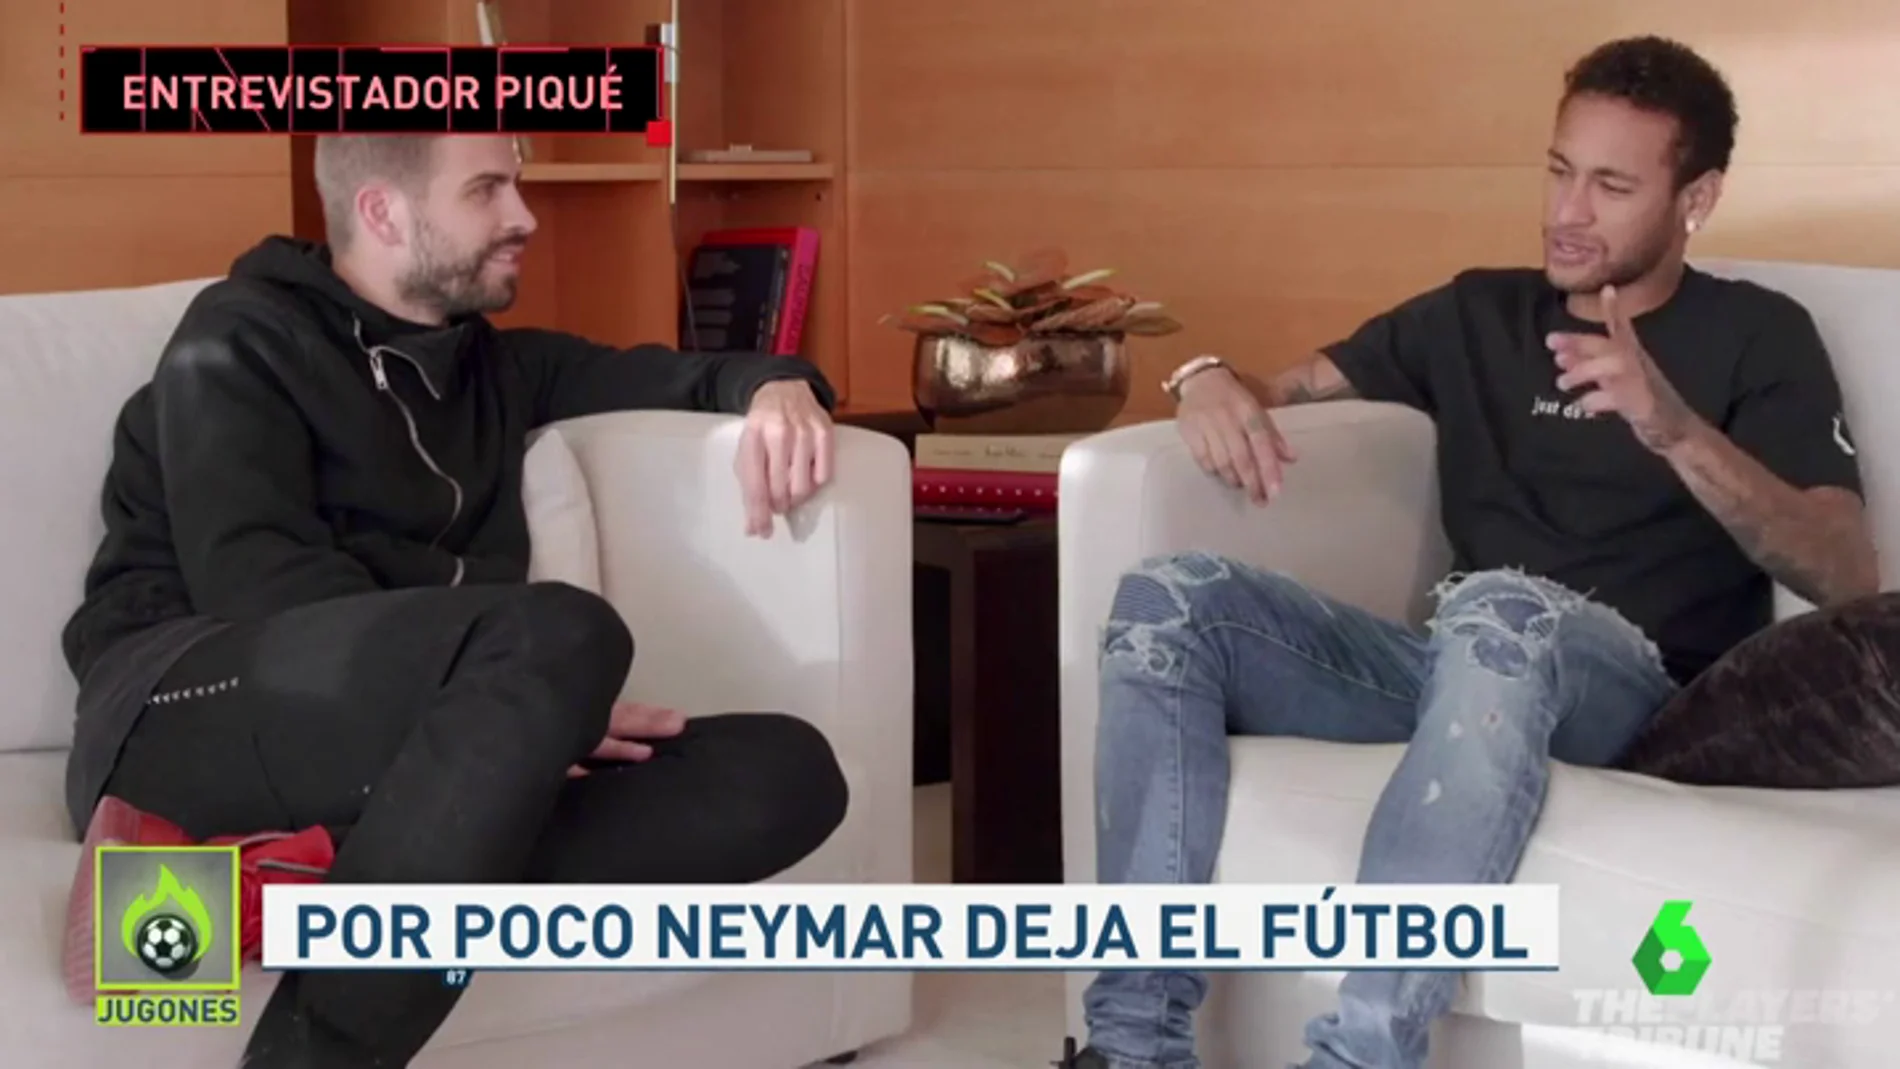 La entrevista de Piqué a Neymar: "¿Firmas una final España-Brasil, 'hat trick' tuyo y ganamos el Mundial en los penaltis?"